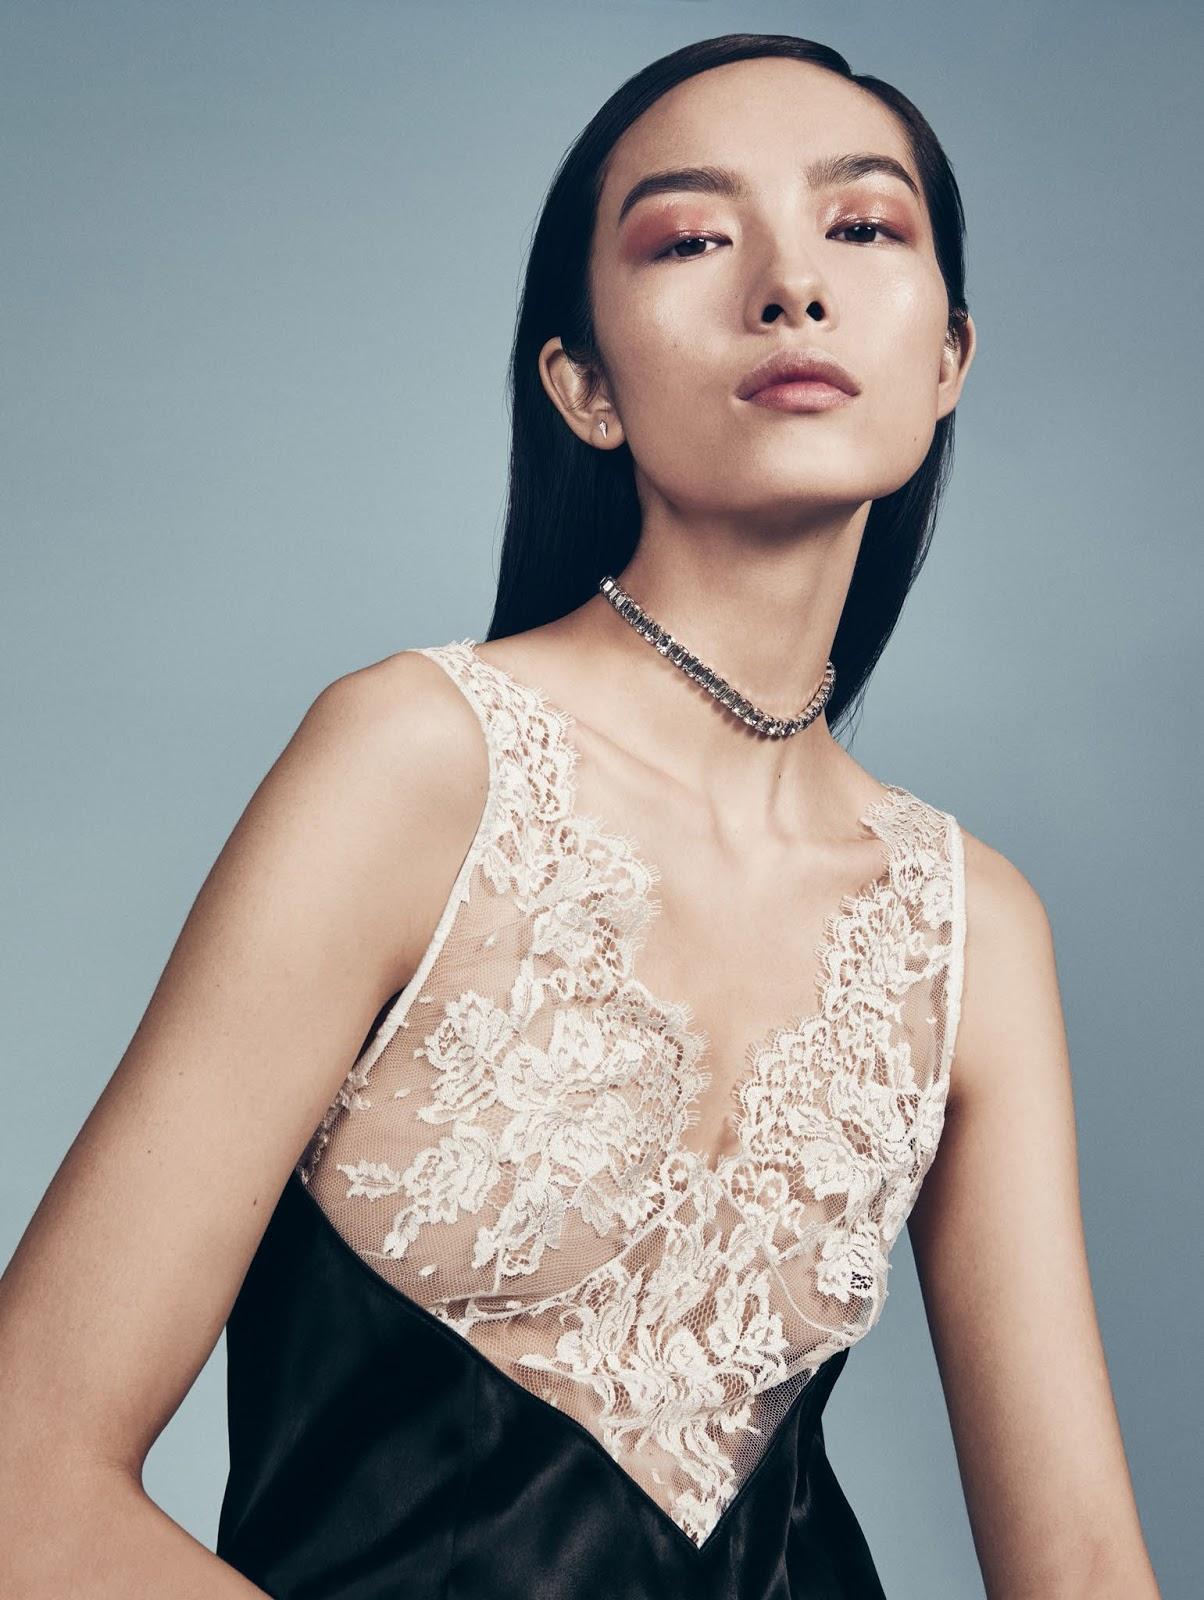 Fei Fei Sun in Vogue China June 2016